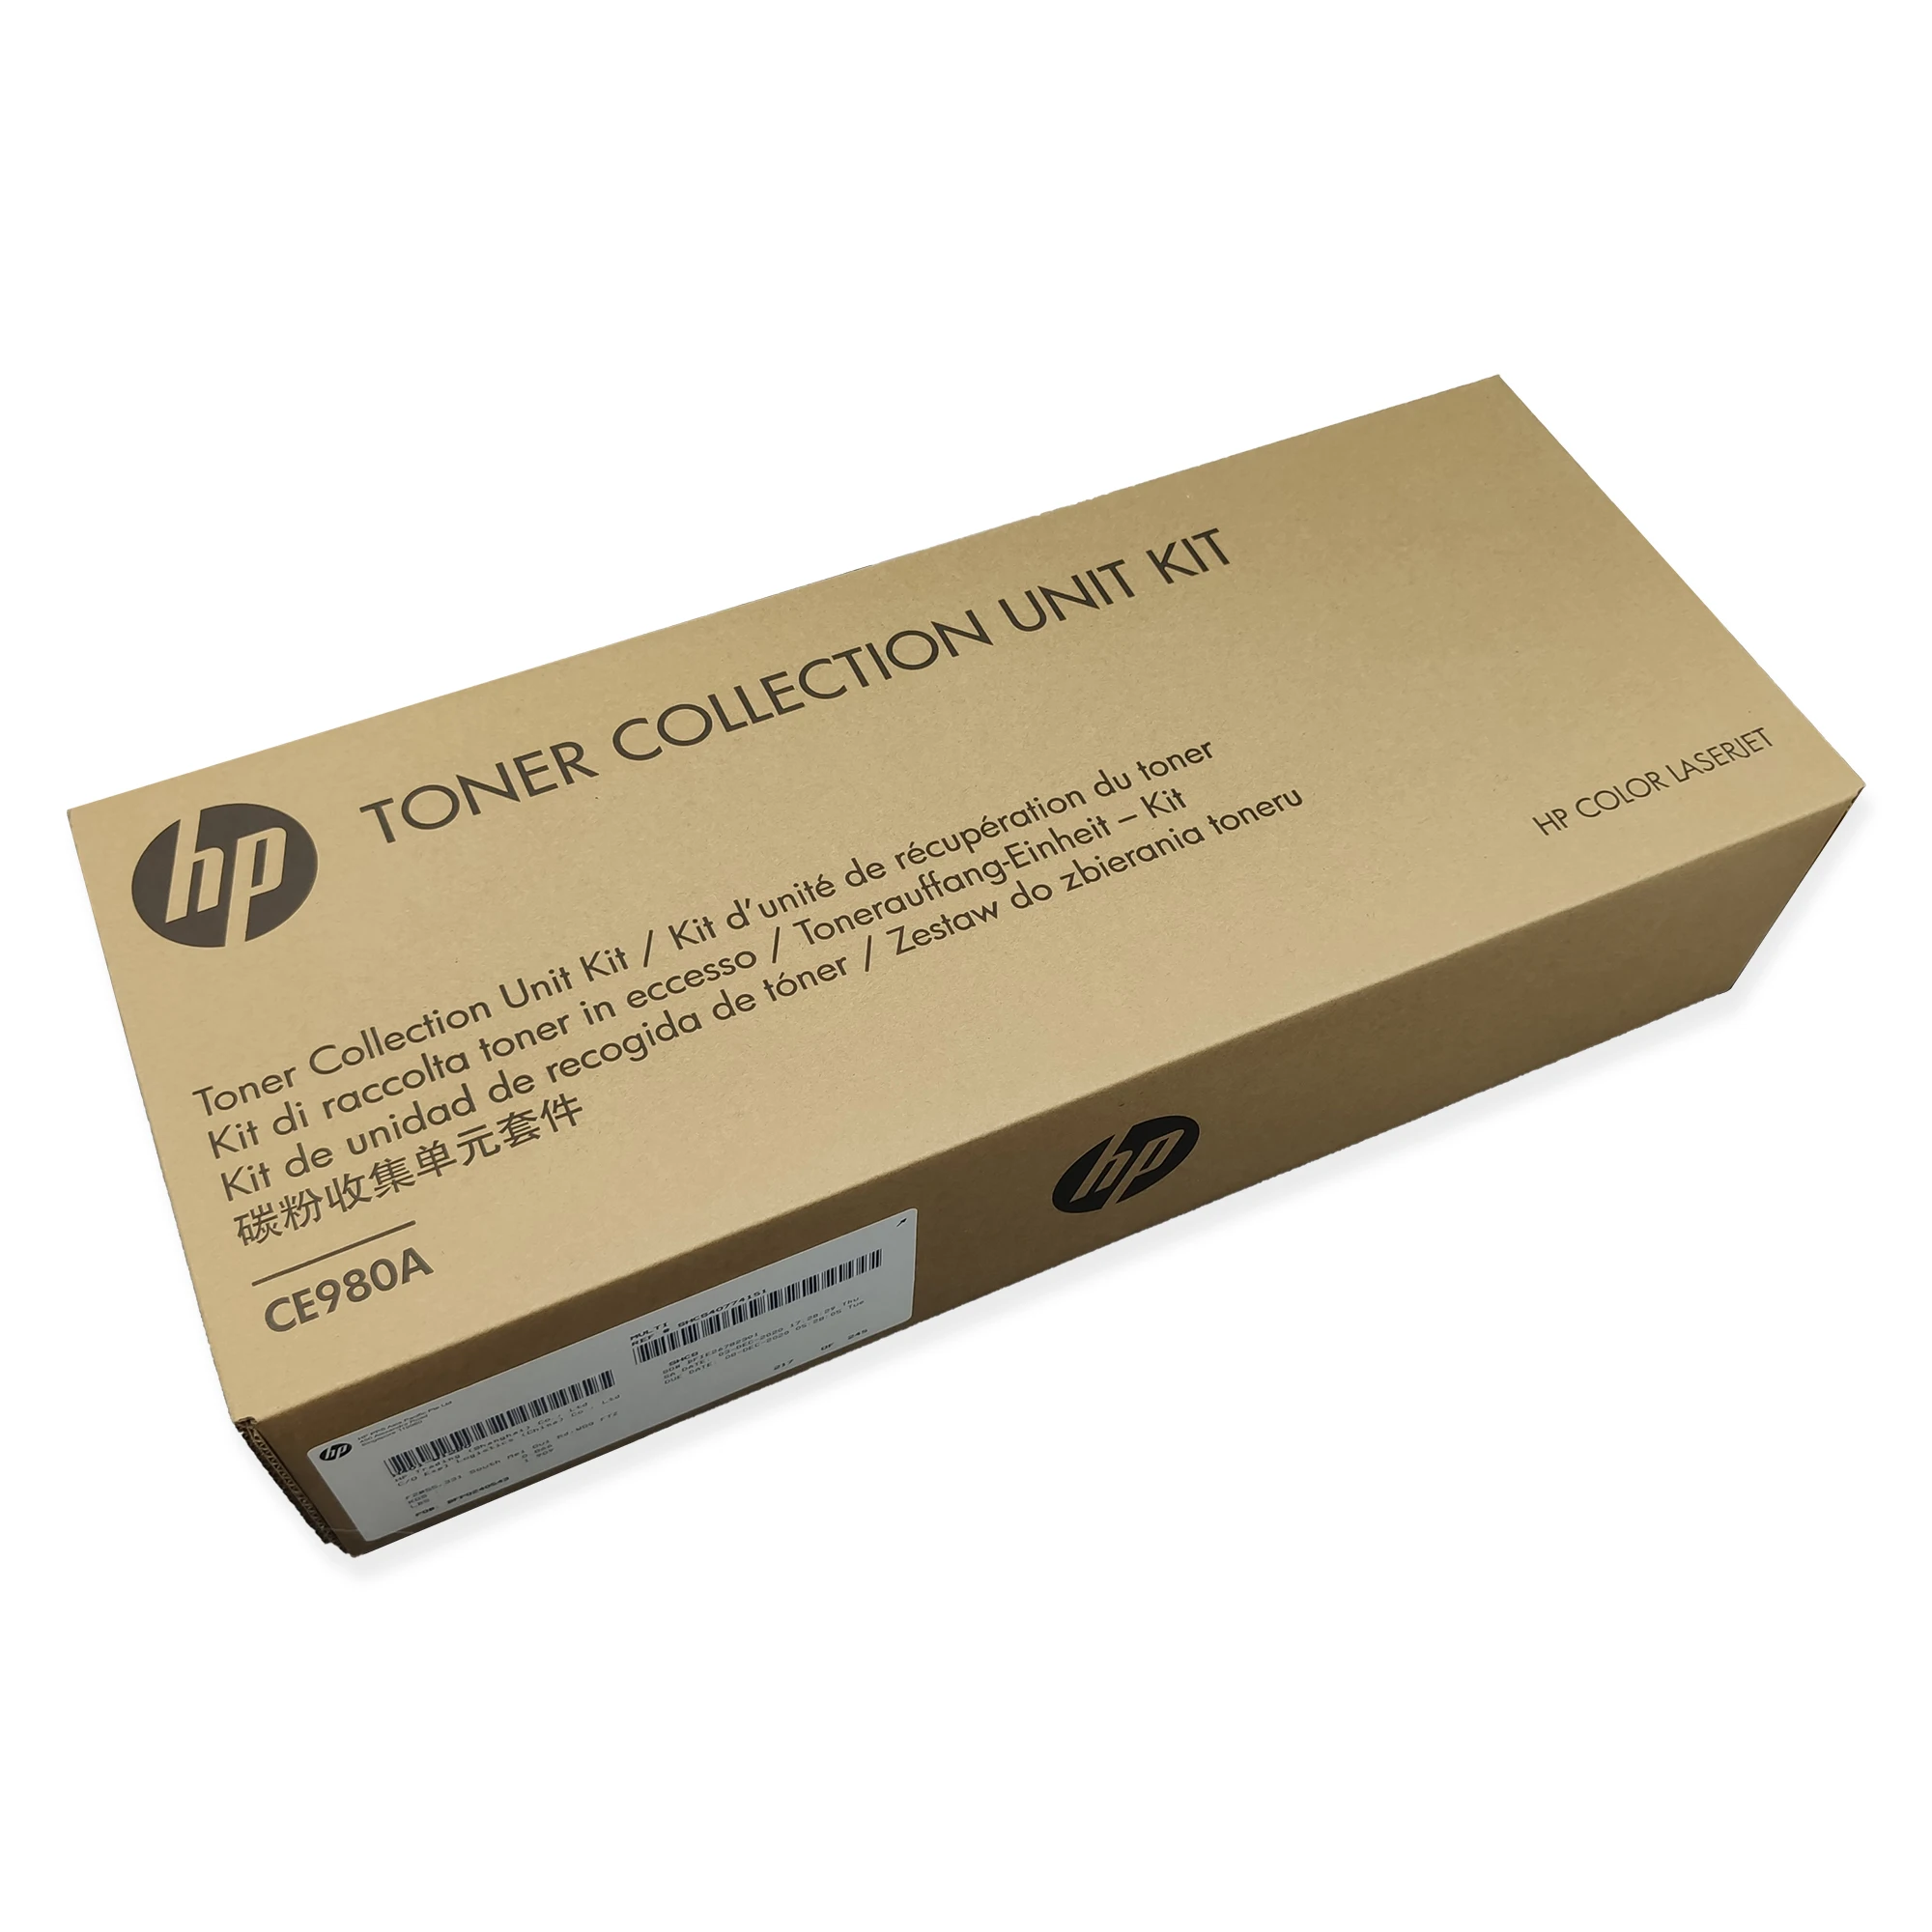 Original Toner Collection Unit for HP 5225 5525 M 750 775 5520 CE710-69005 CE980A